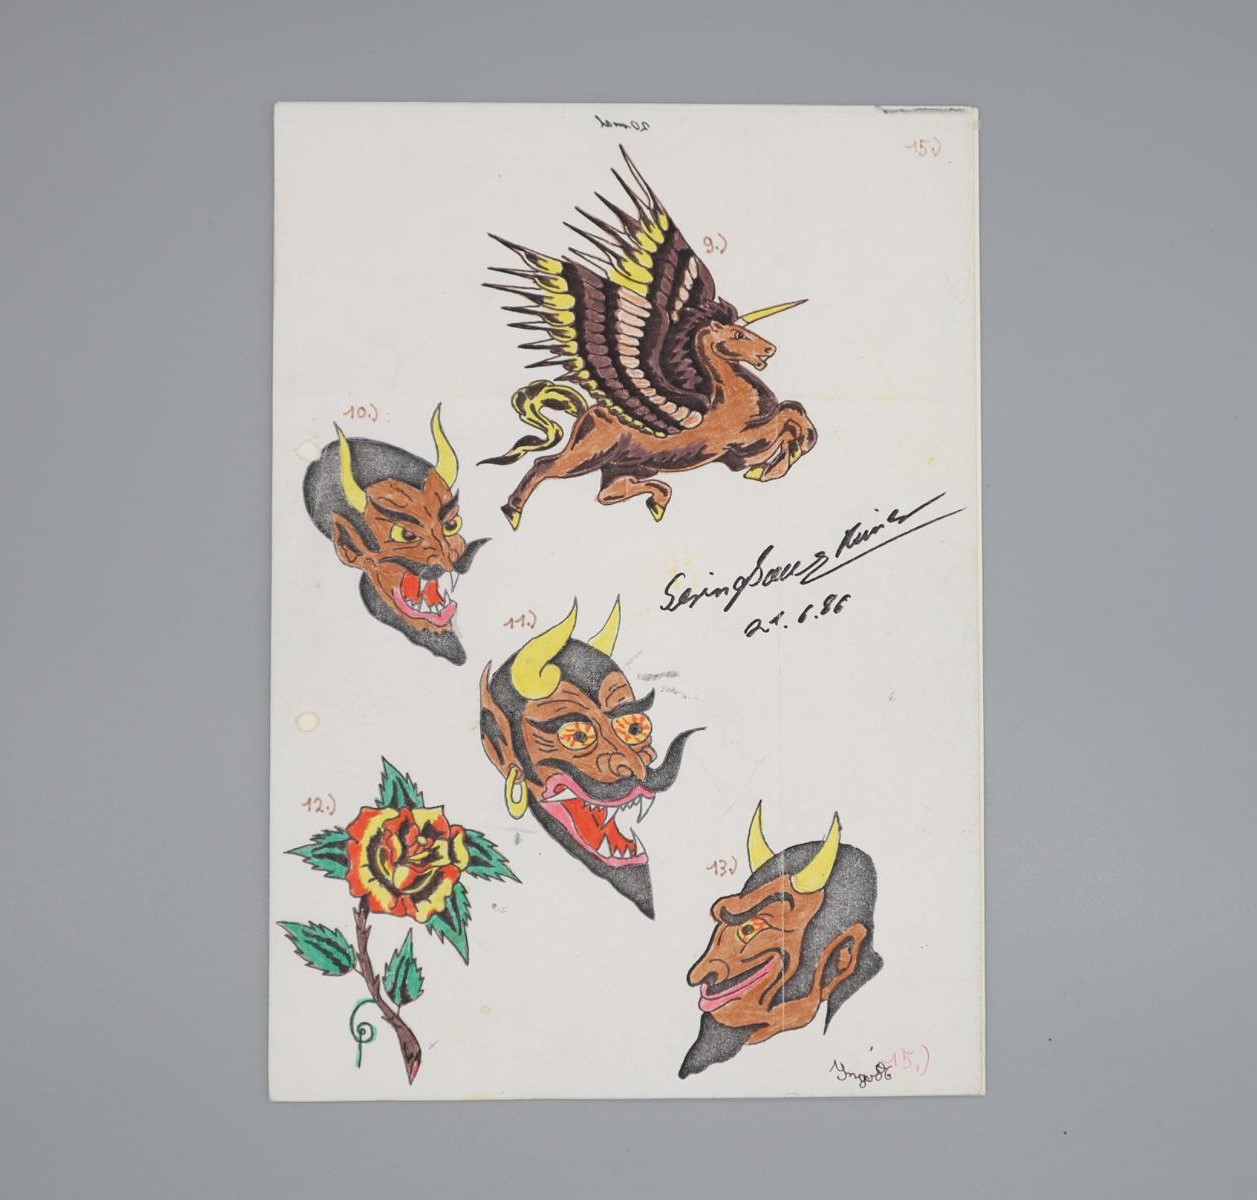 Tätowiervorlage auf DNA4-Blatt mit fünf farbigen Motiven, einem geflügelten Einhorn, drei verschiedenen Teufelsköpfen und einer Rose. Die Vorlage wurde 1988 in der Vollzugsanstalt Luswigsburg gefunden und ist mittlerweile Objekt des Strafvollzugsmuseums.